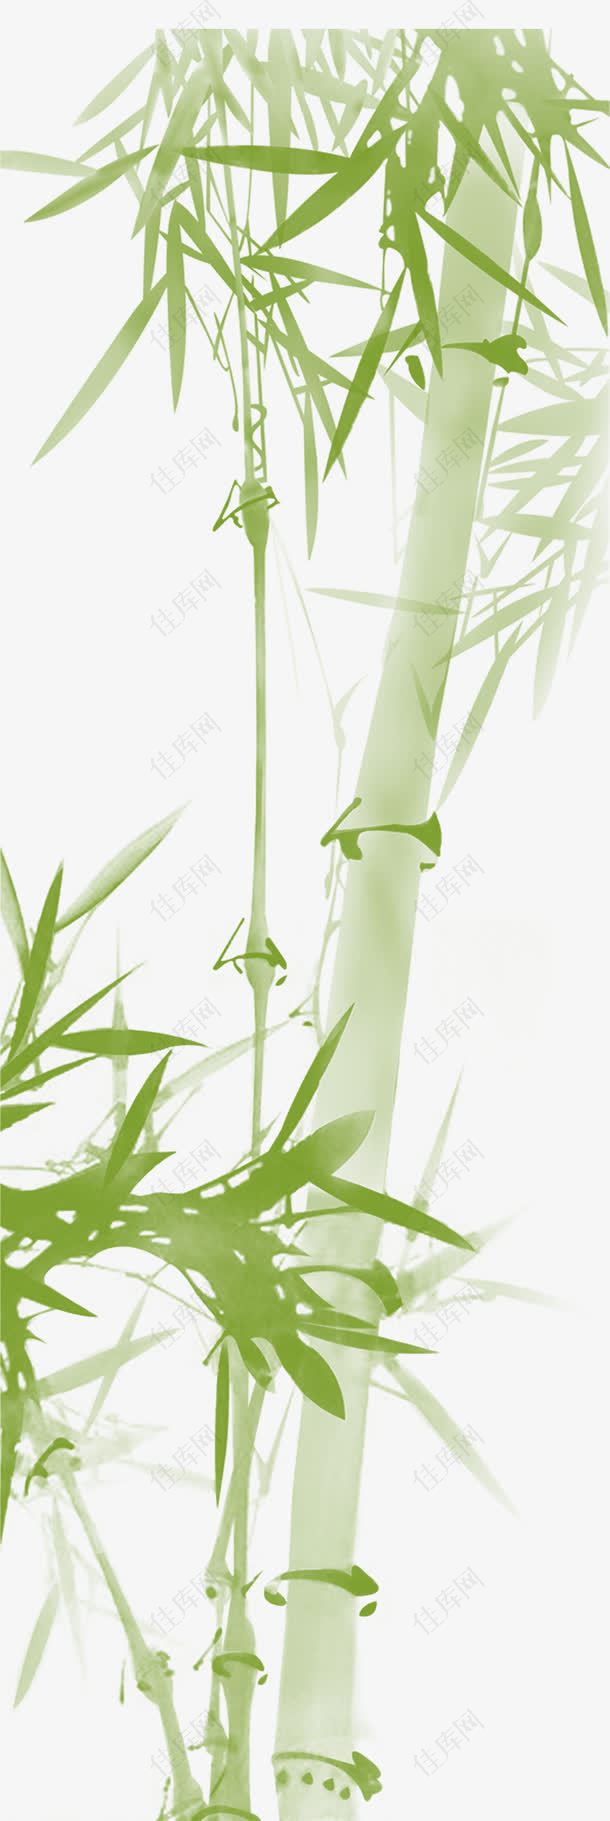 淡绿色的竹子